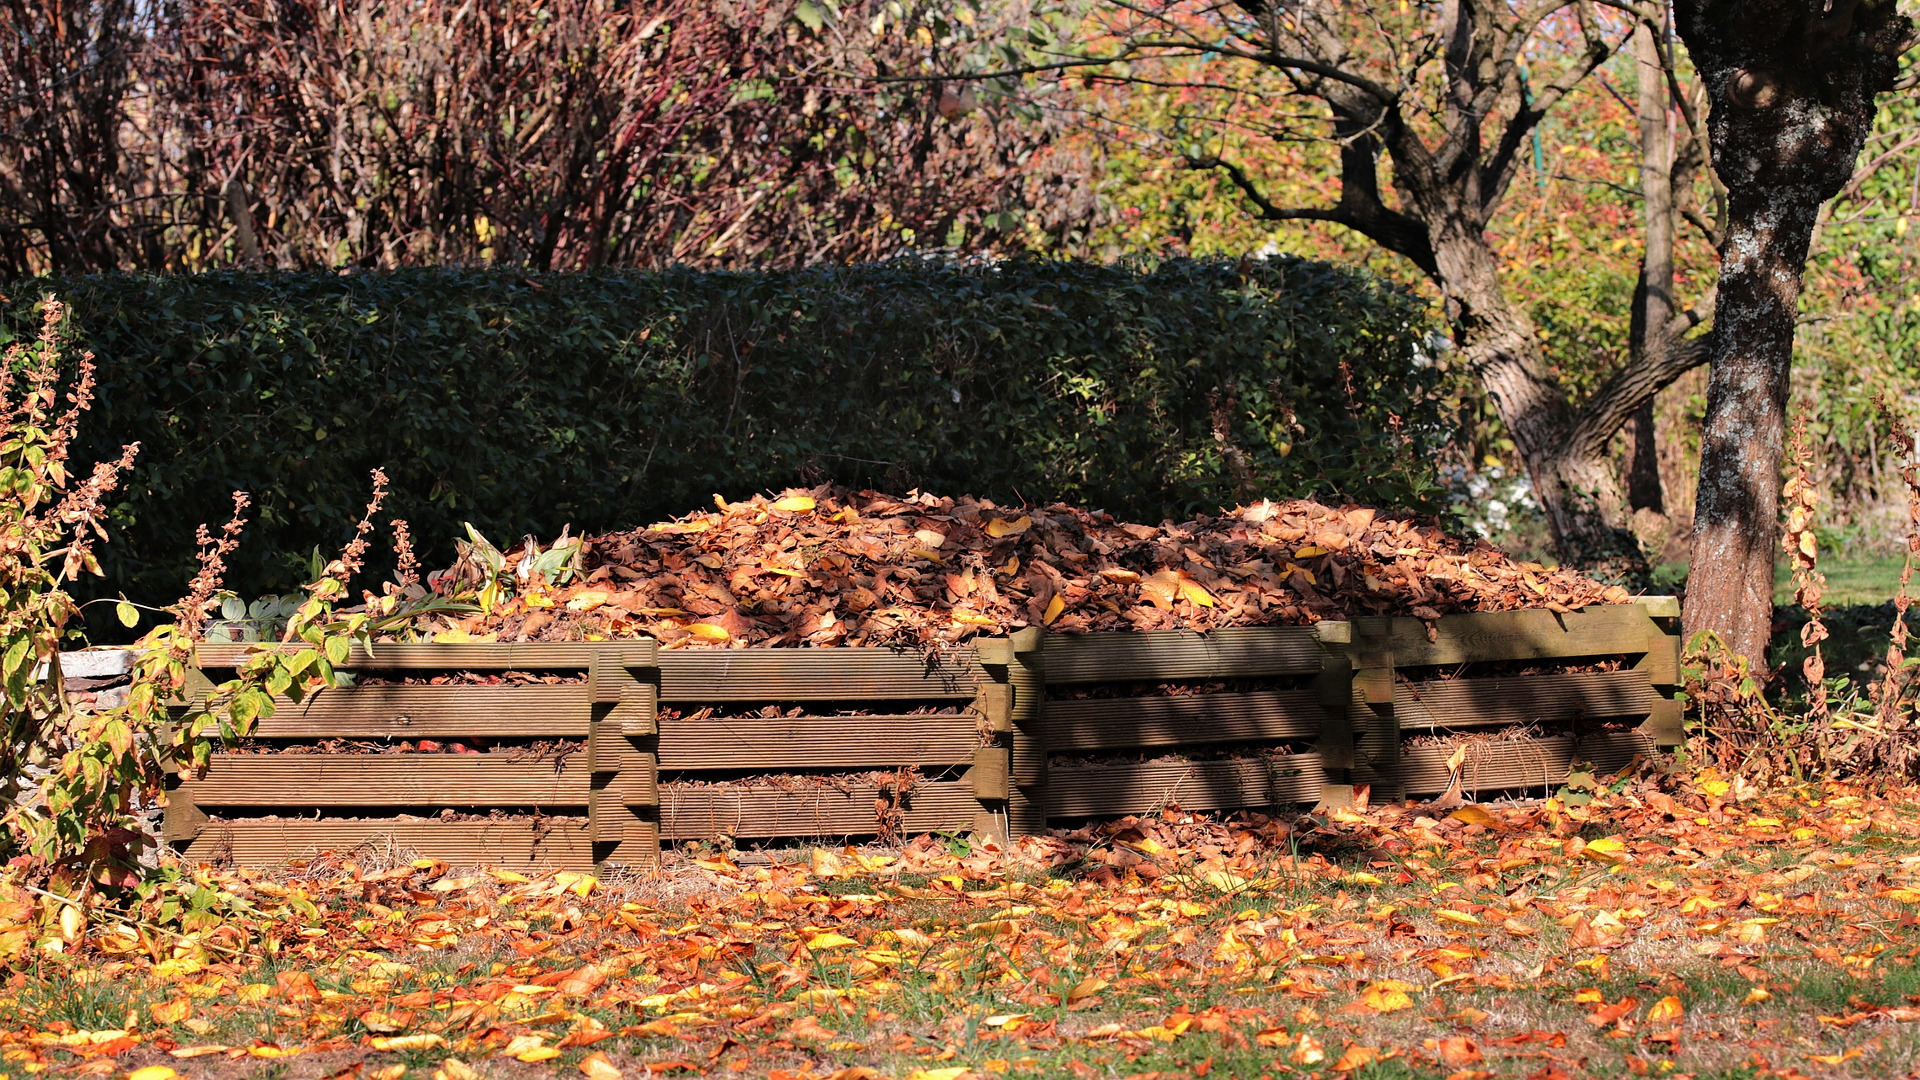 hacer-compost-de-las-hojas-secas-1920